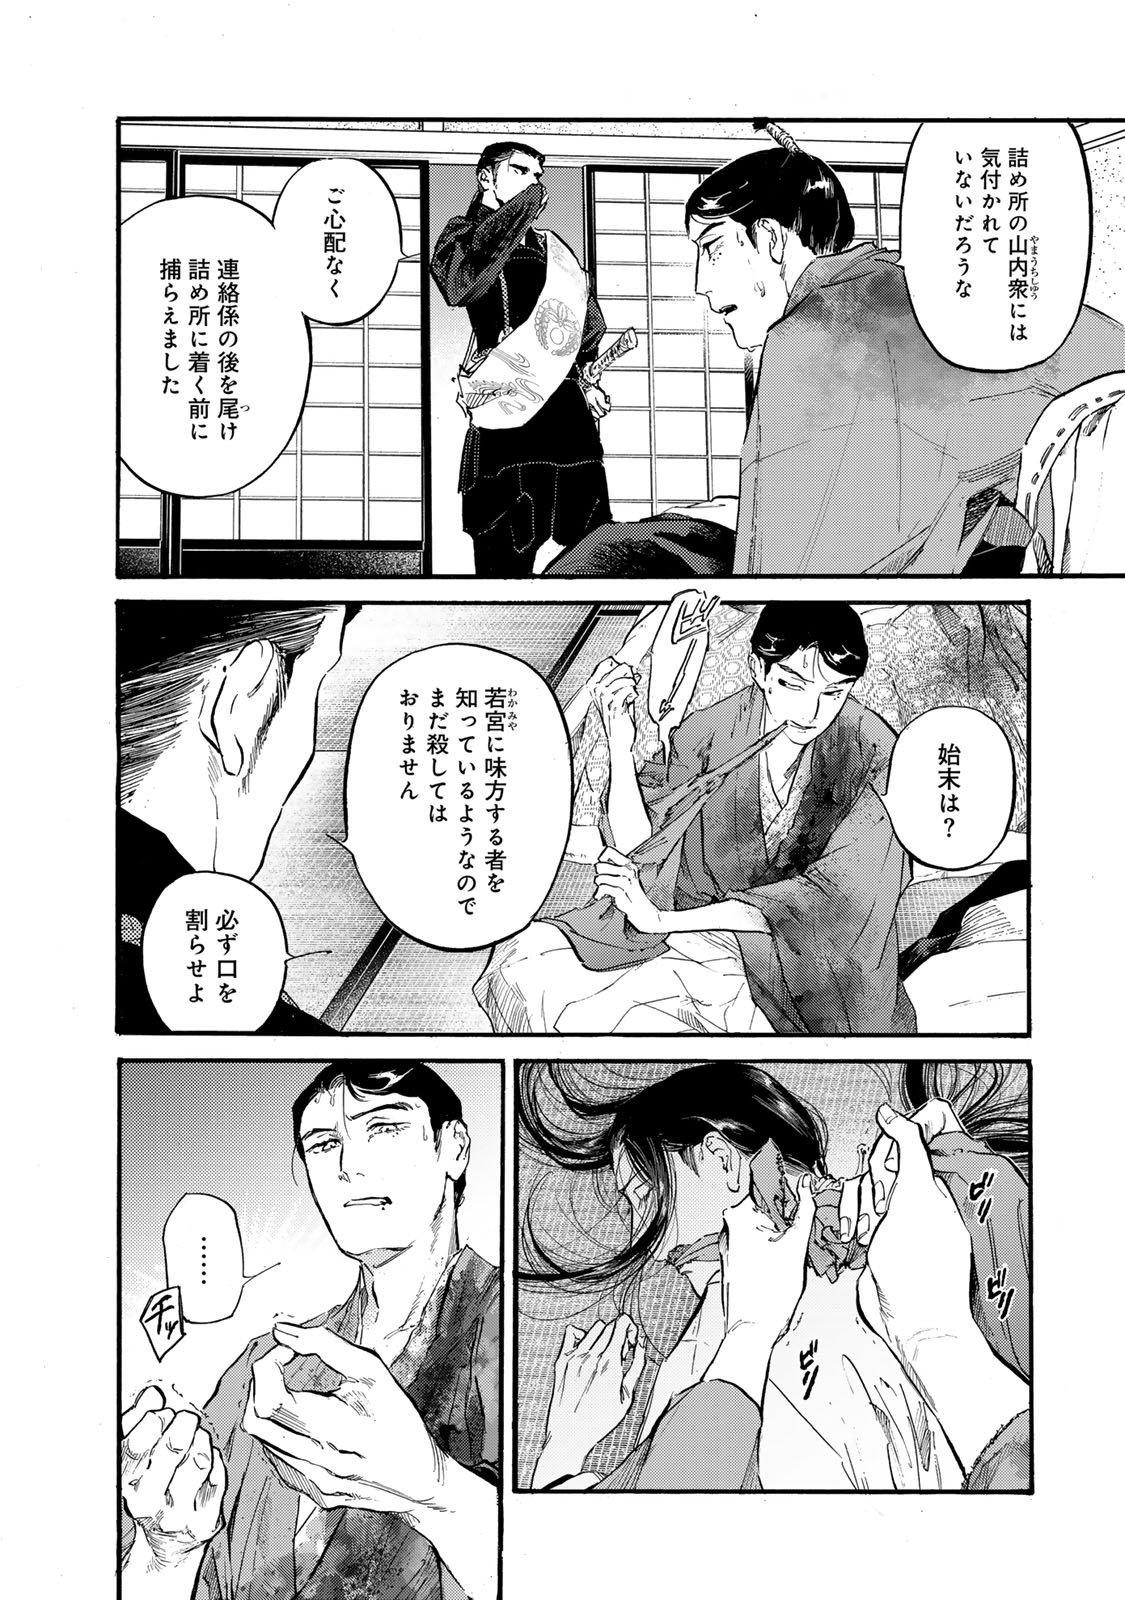 Karasu wa Aruji wo Erabanai - Chapter 40 - Page 16